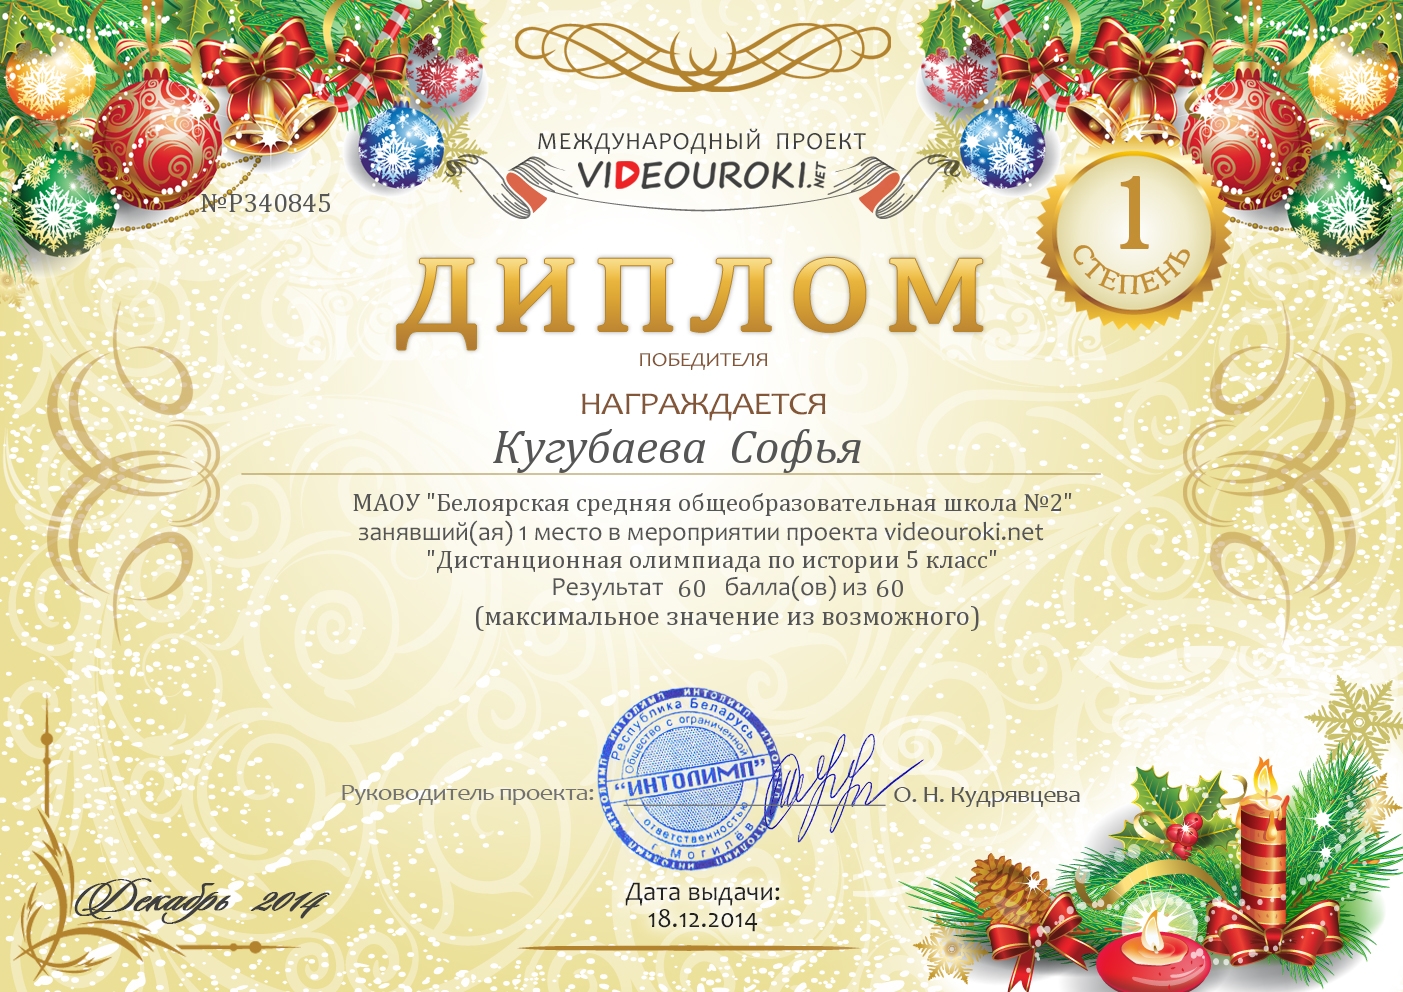 Кугубаева  Софья - диплом первой степени.jpg